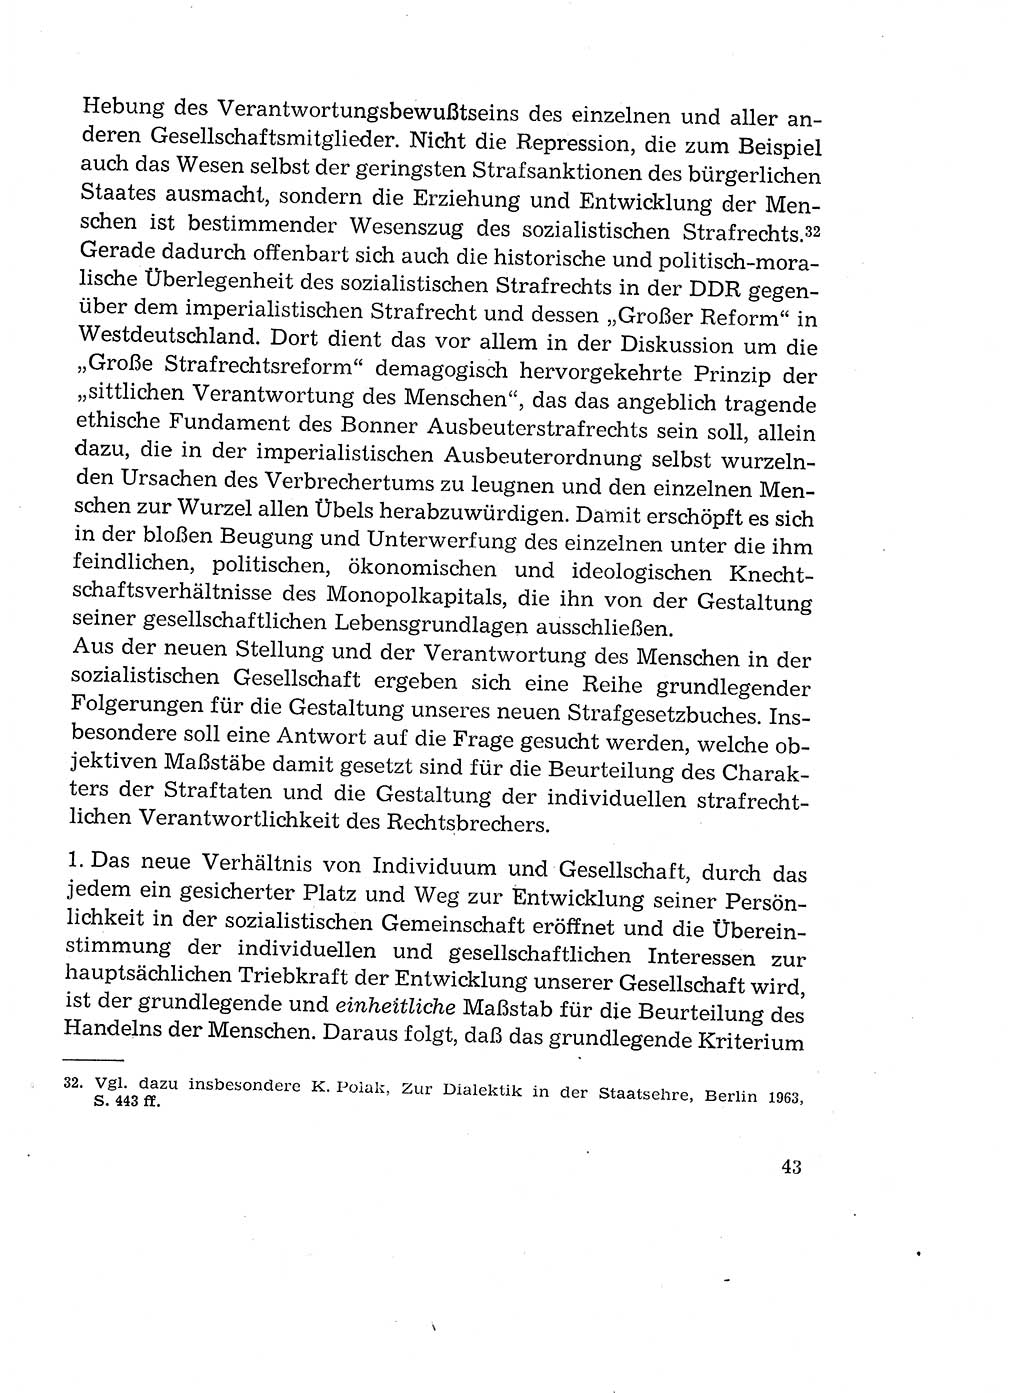 Verantwortung und Schuld im neuen Strafgesetzbuch (StGB) [Deutsche Demokratische Republik (DDR)] 1964, Seite 43 (Verantw. Sch. StGB DDR 1964, S. 43)